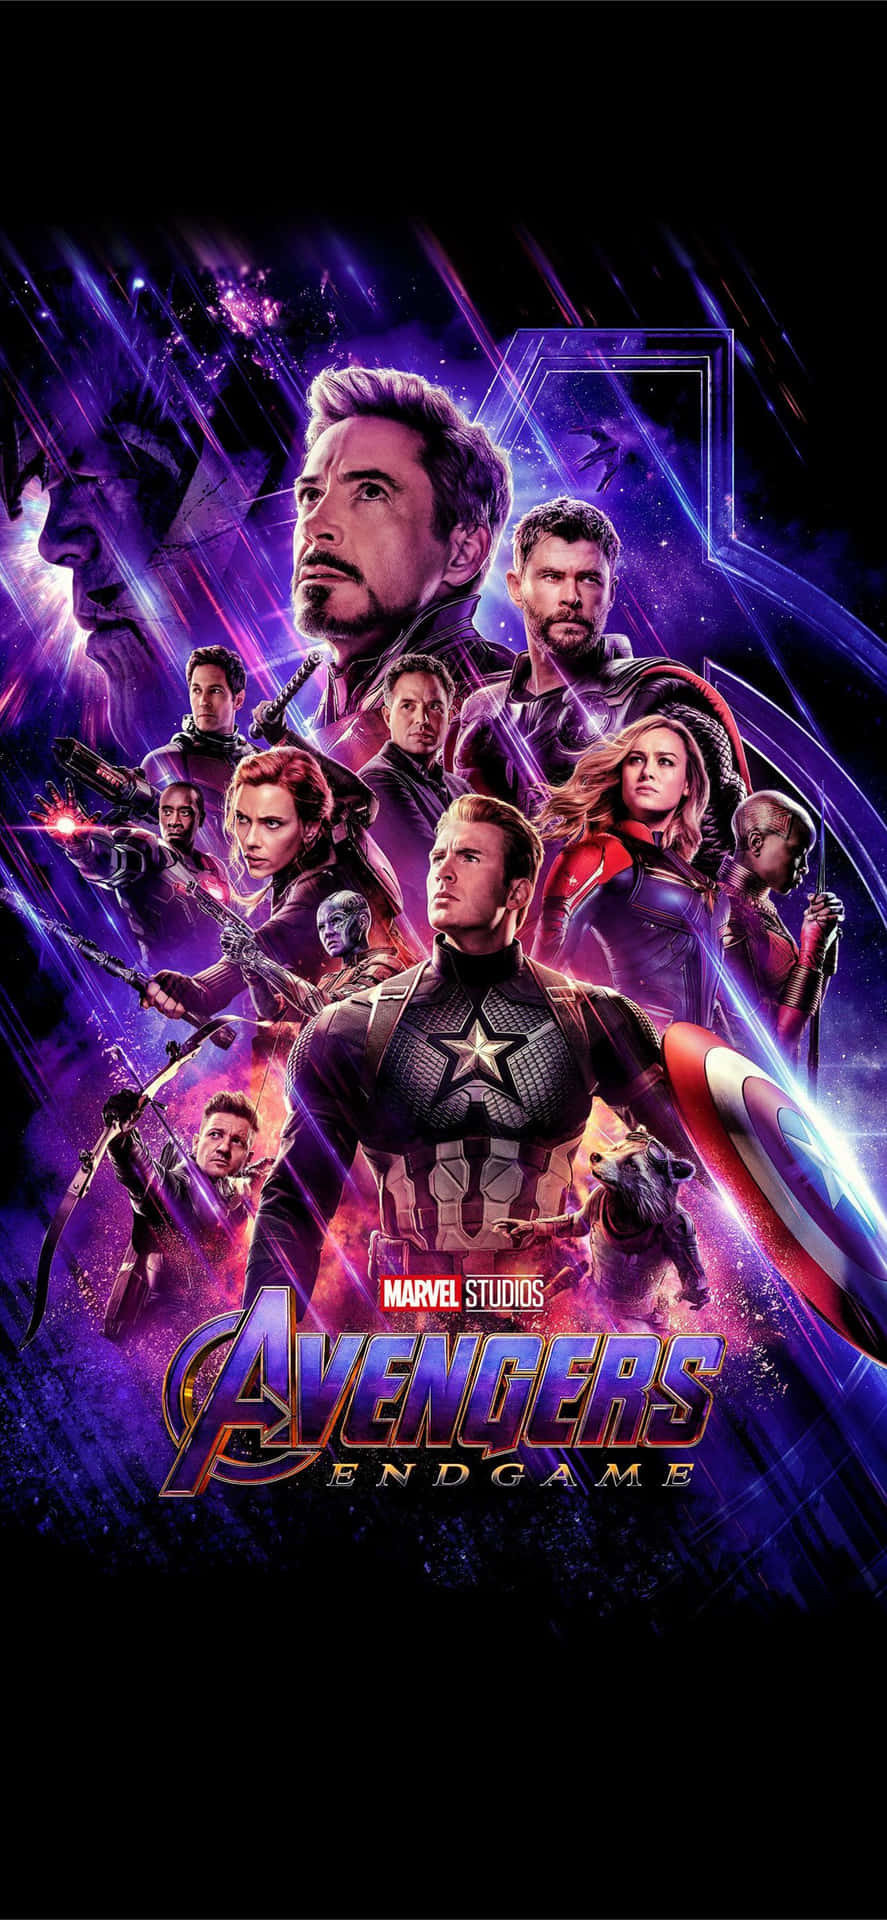 Foren med Avengers og deltag i kampen mod Thanos med Avengers Endgame iPhone Wallpaper. Wallpaper